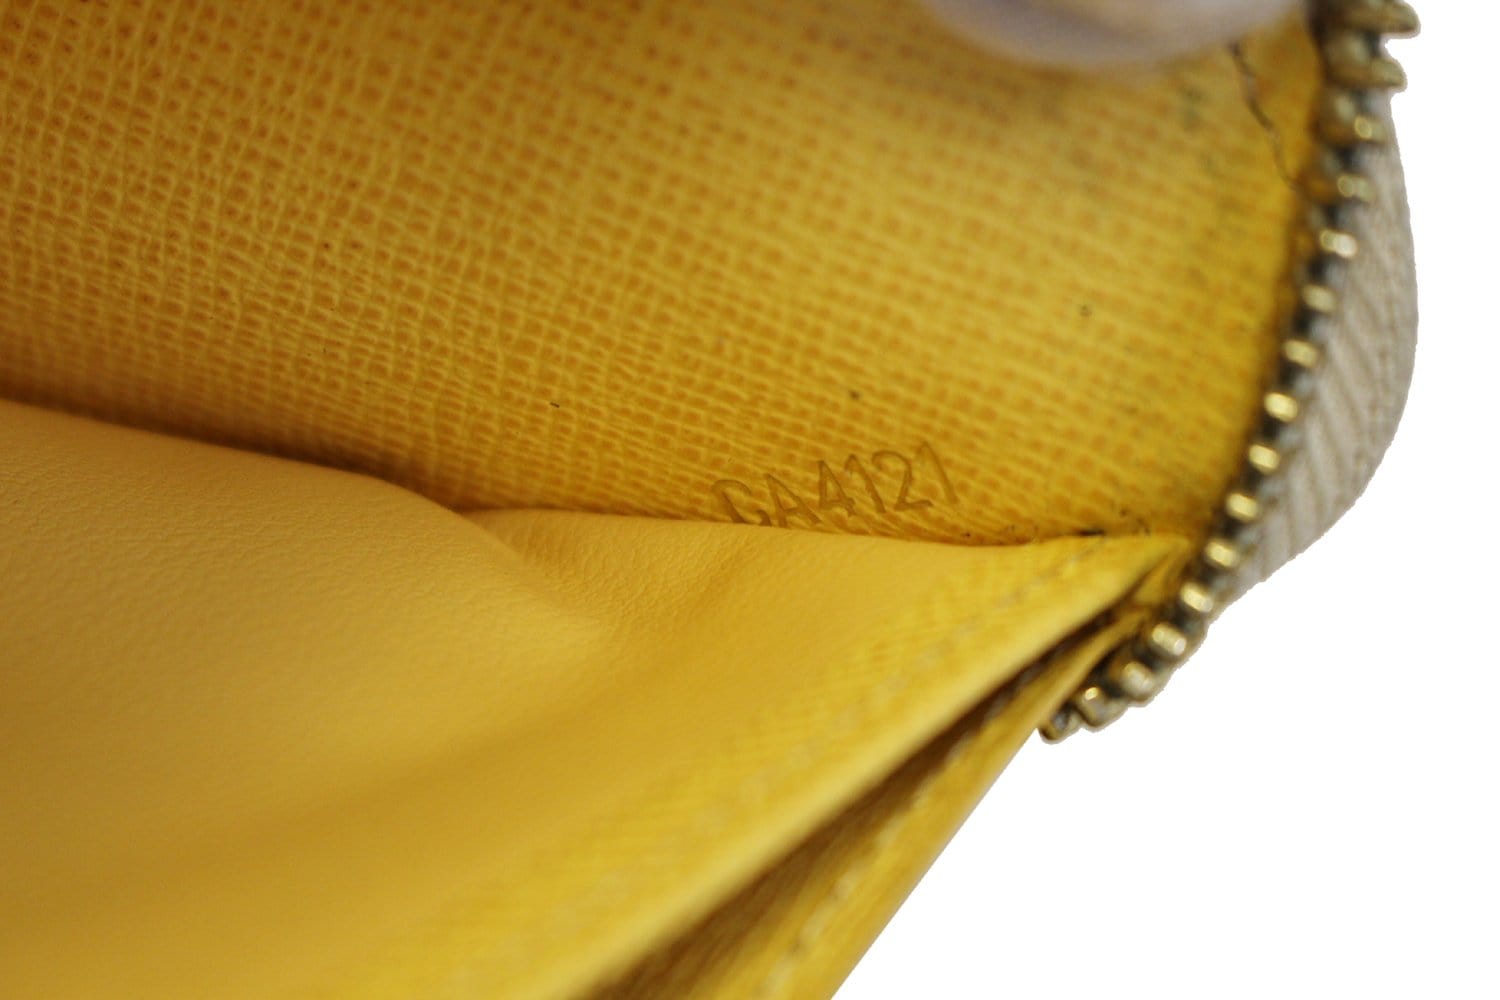 Louis Vuitton damier azur zippy playful birds wallet – My